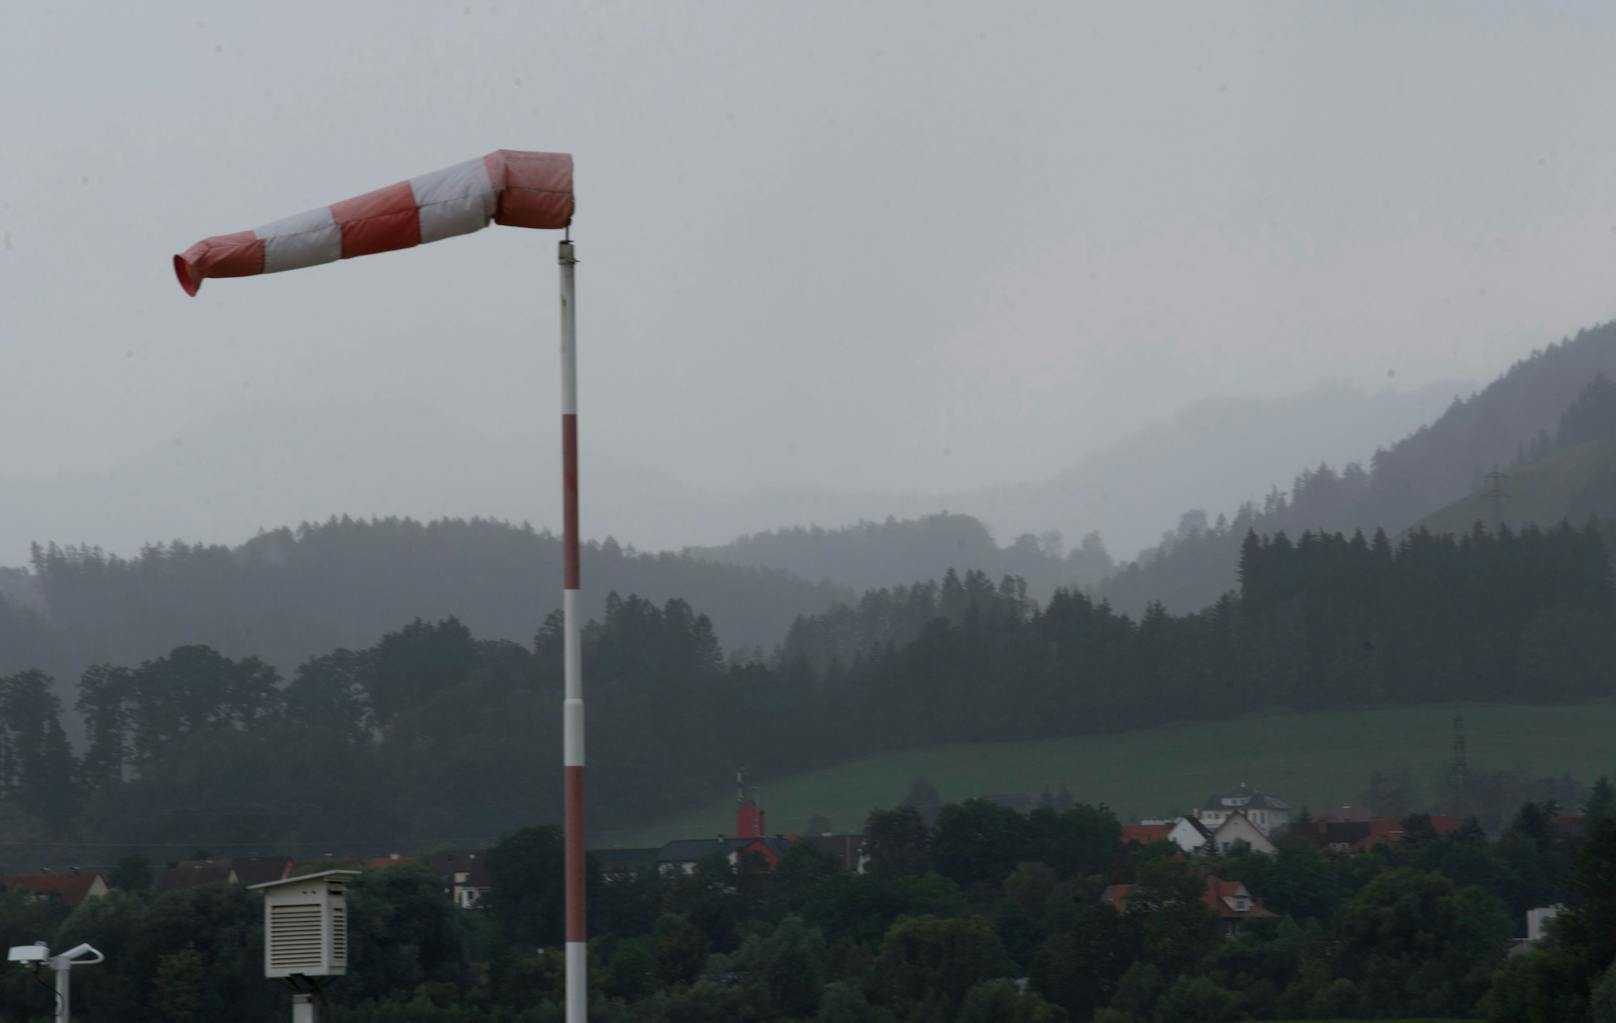 In Teilen Österreichs braust der Sturm. Die gute Nachricht: danach wird es vorfrühlingshaft. Symbolbild.&nbsp;